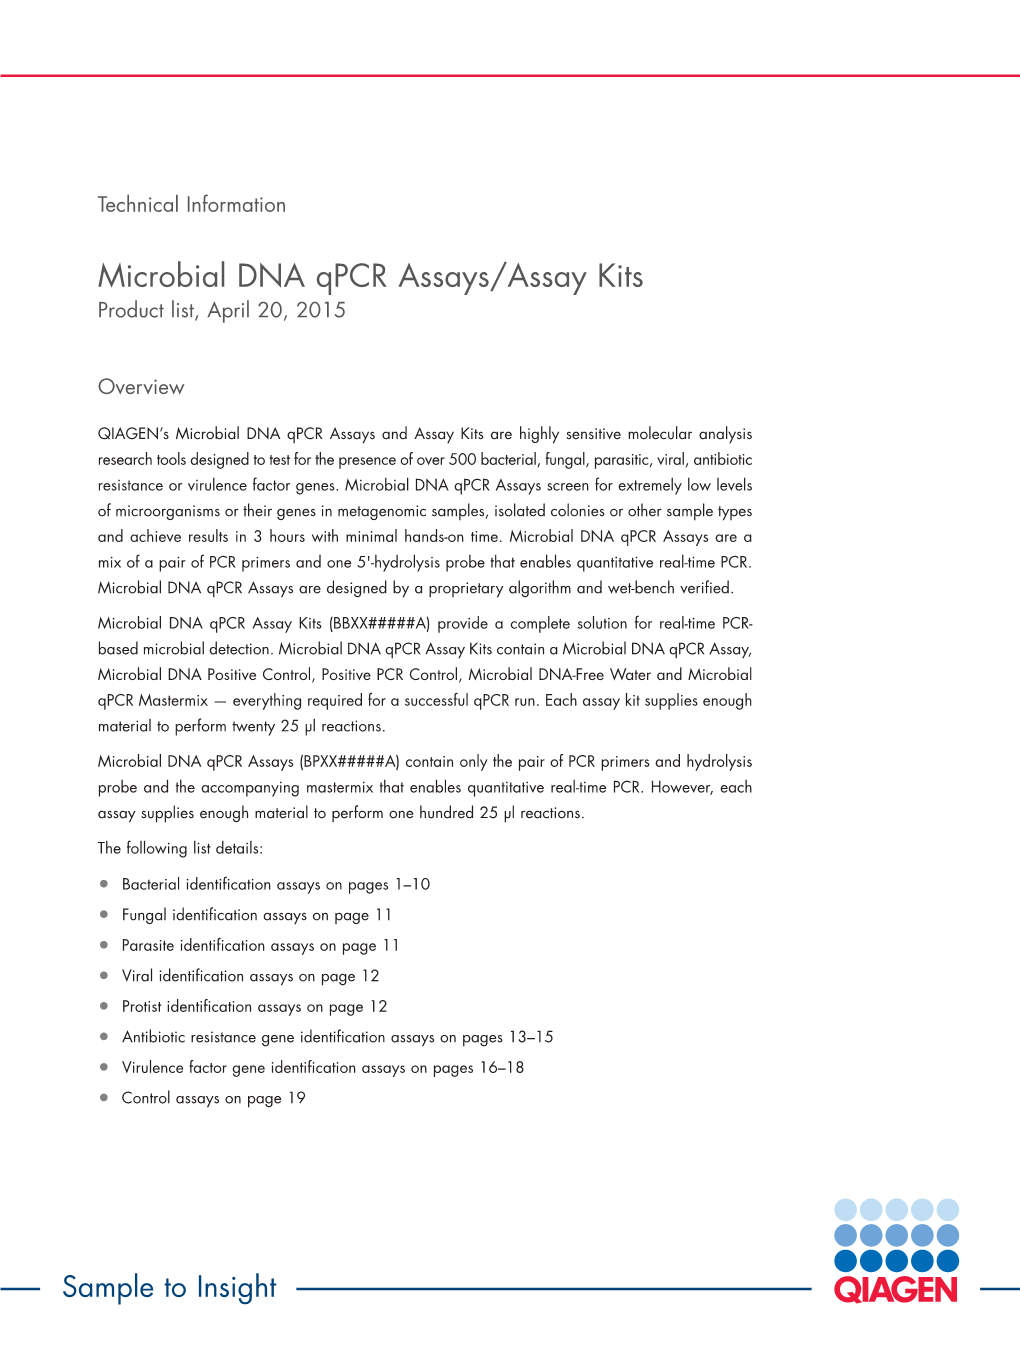 Microbial DNA Qpcr Assays/Assay Kits Product List, April 20, 2015